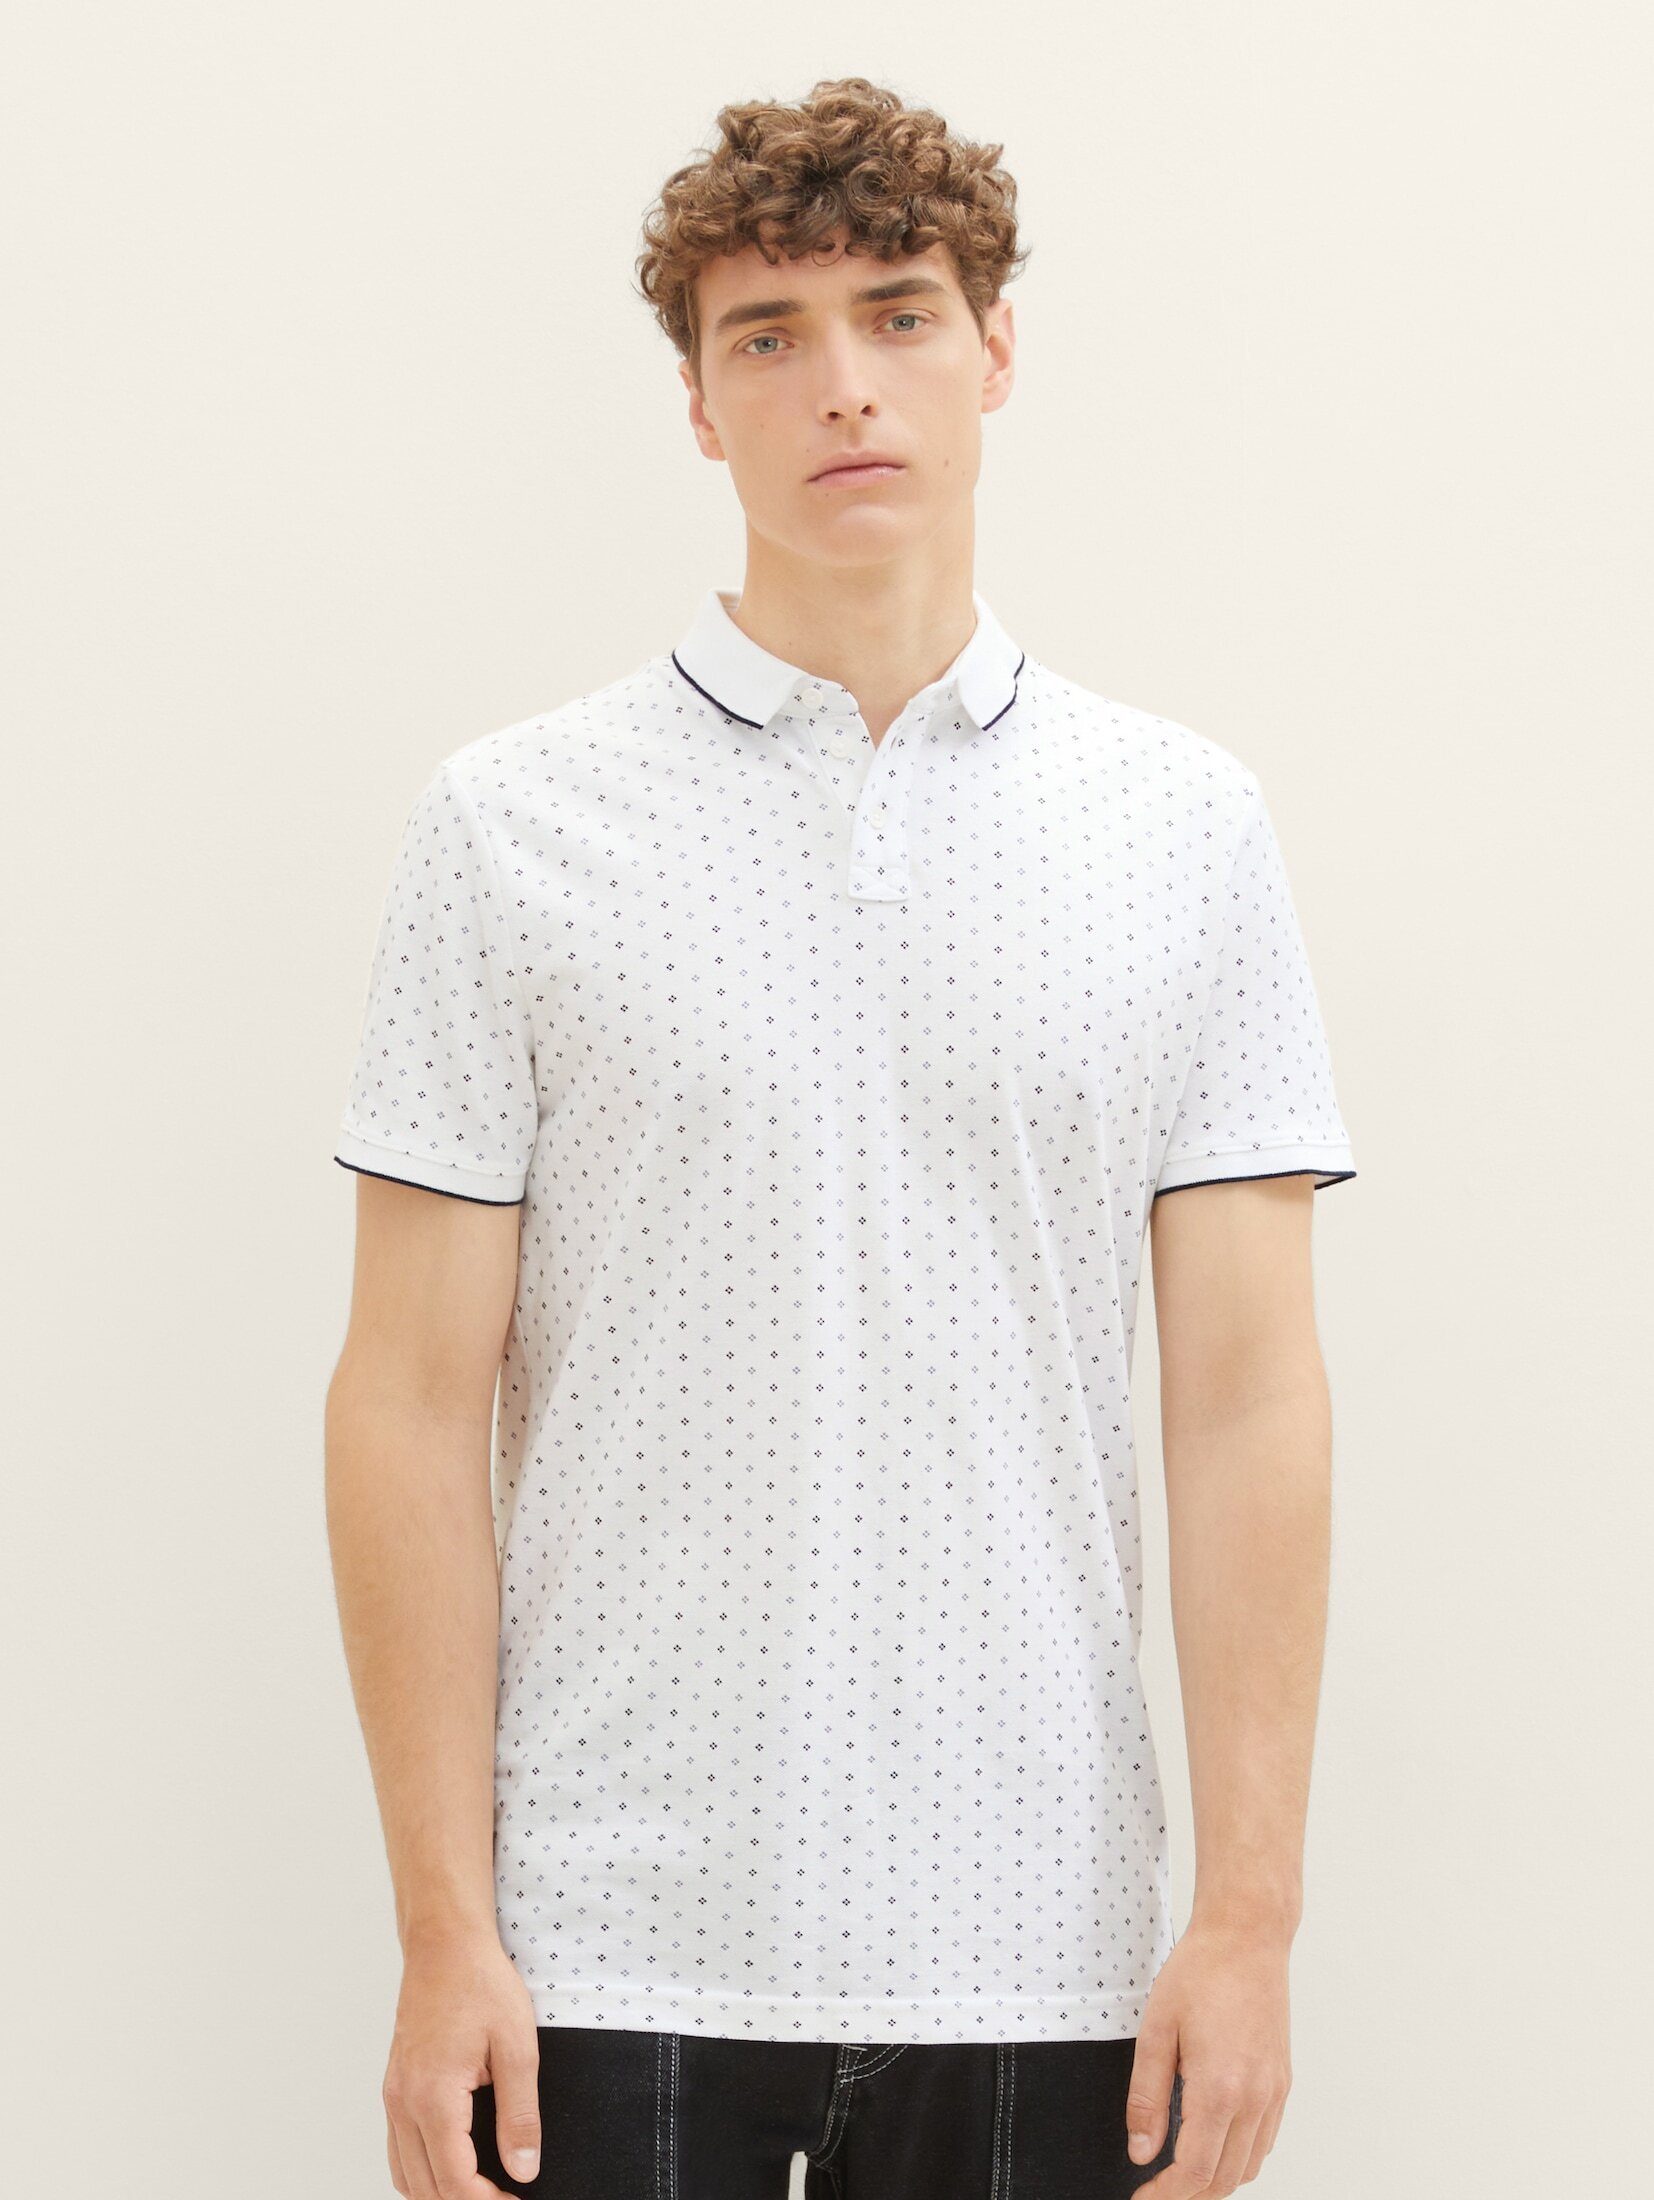 TOM TAILOR Denim Poloshirt Poloshirt mit Allover-Print white regular dot print